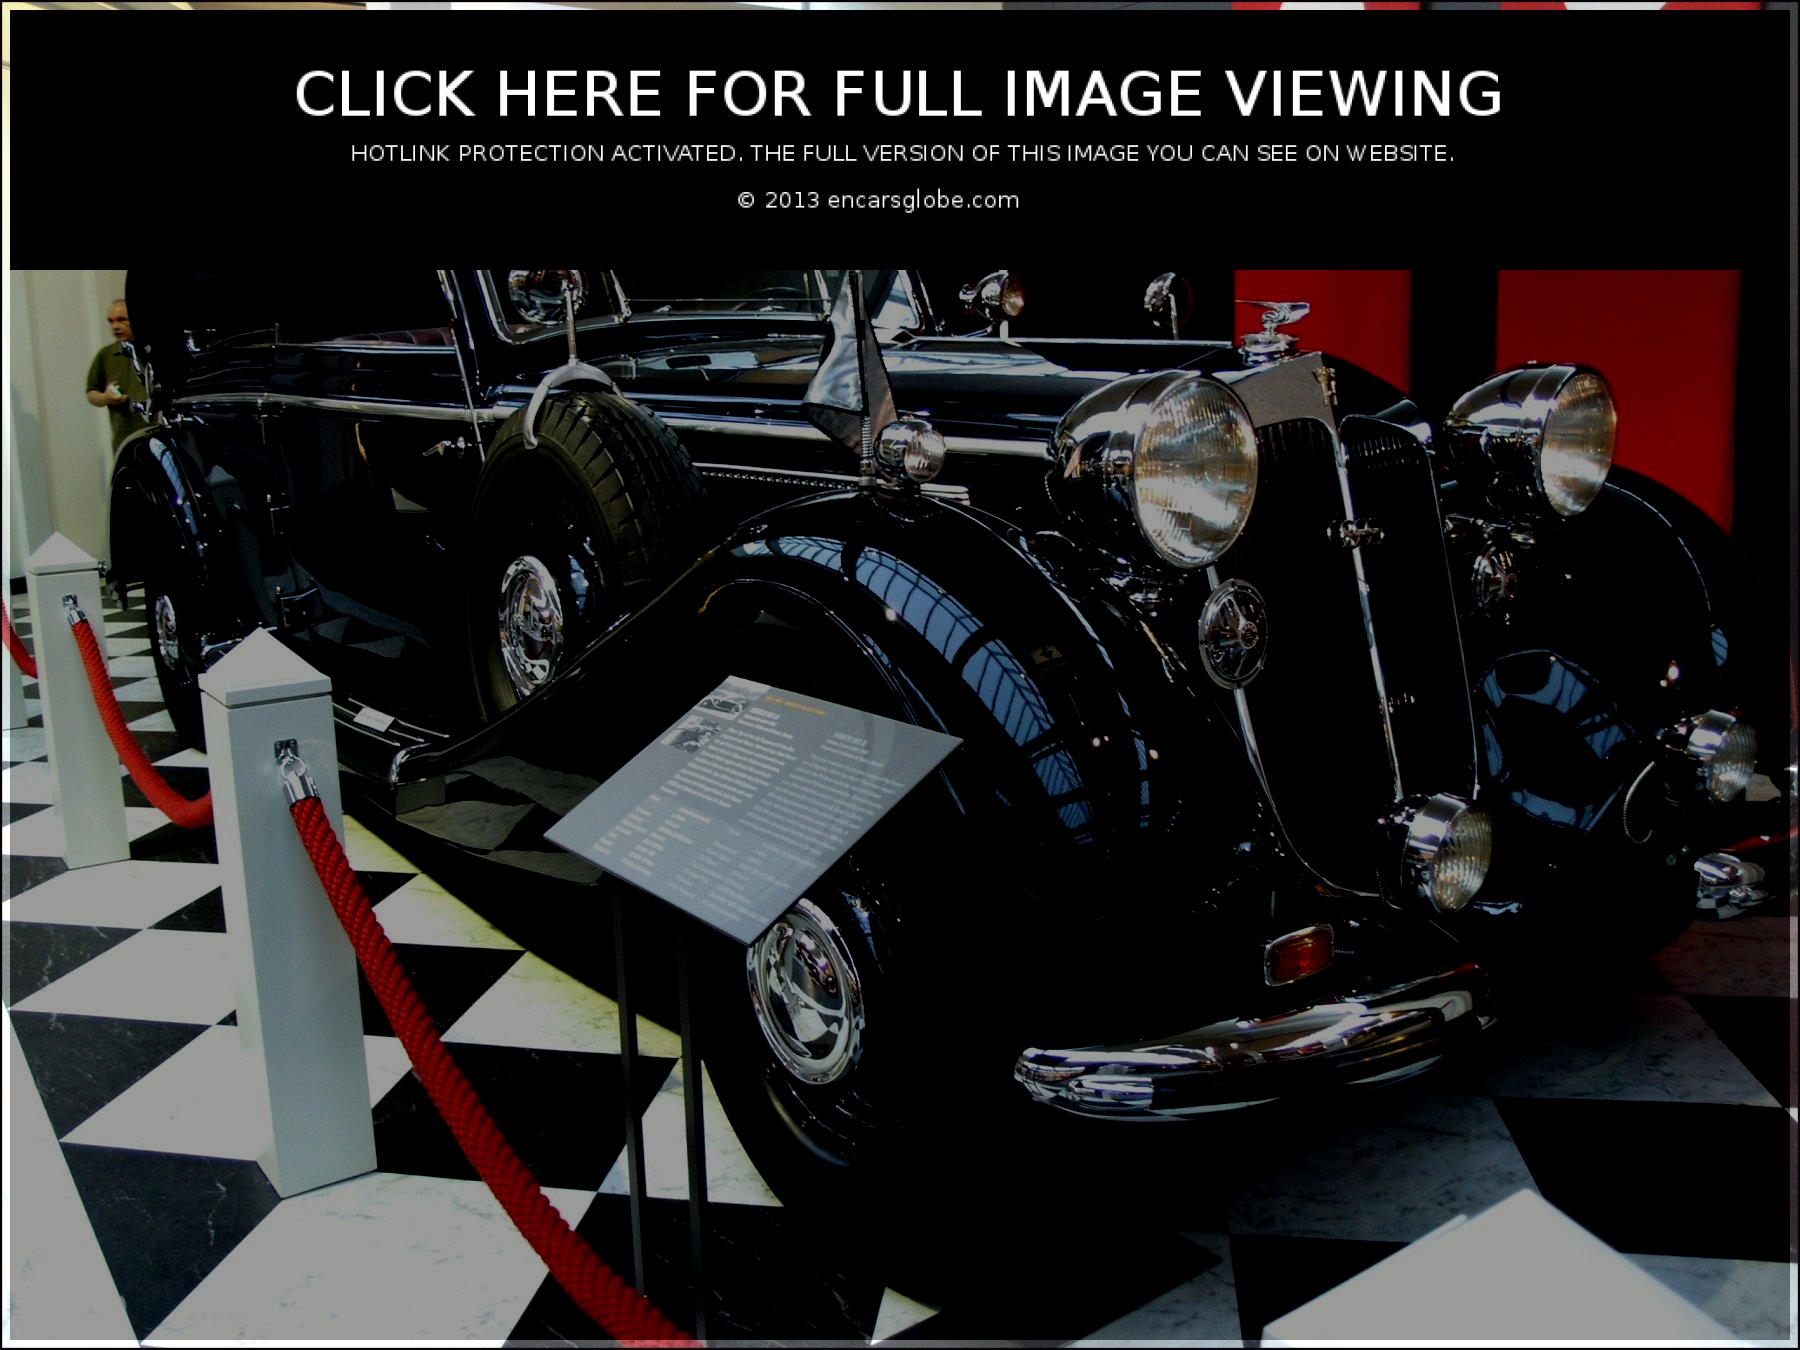 Horch 951 A Berline - Cabriolet: Galerie de photos, informations complètes...